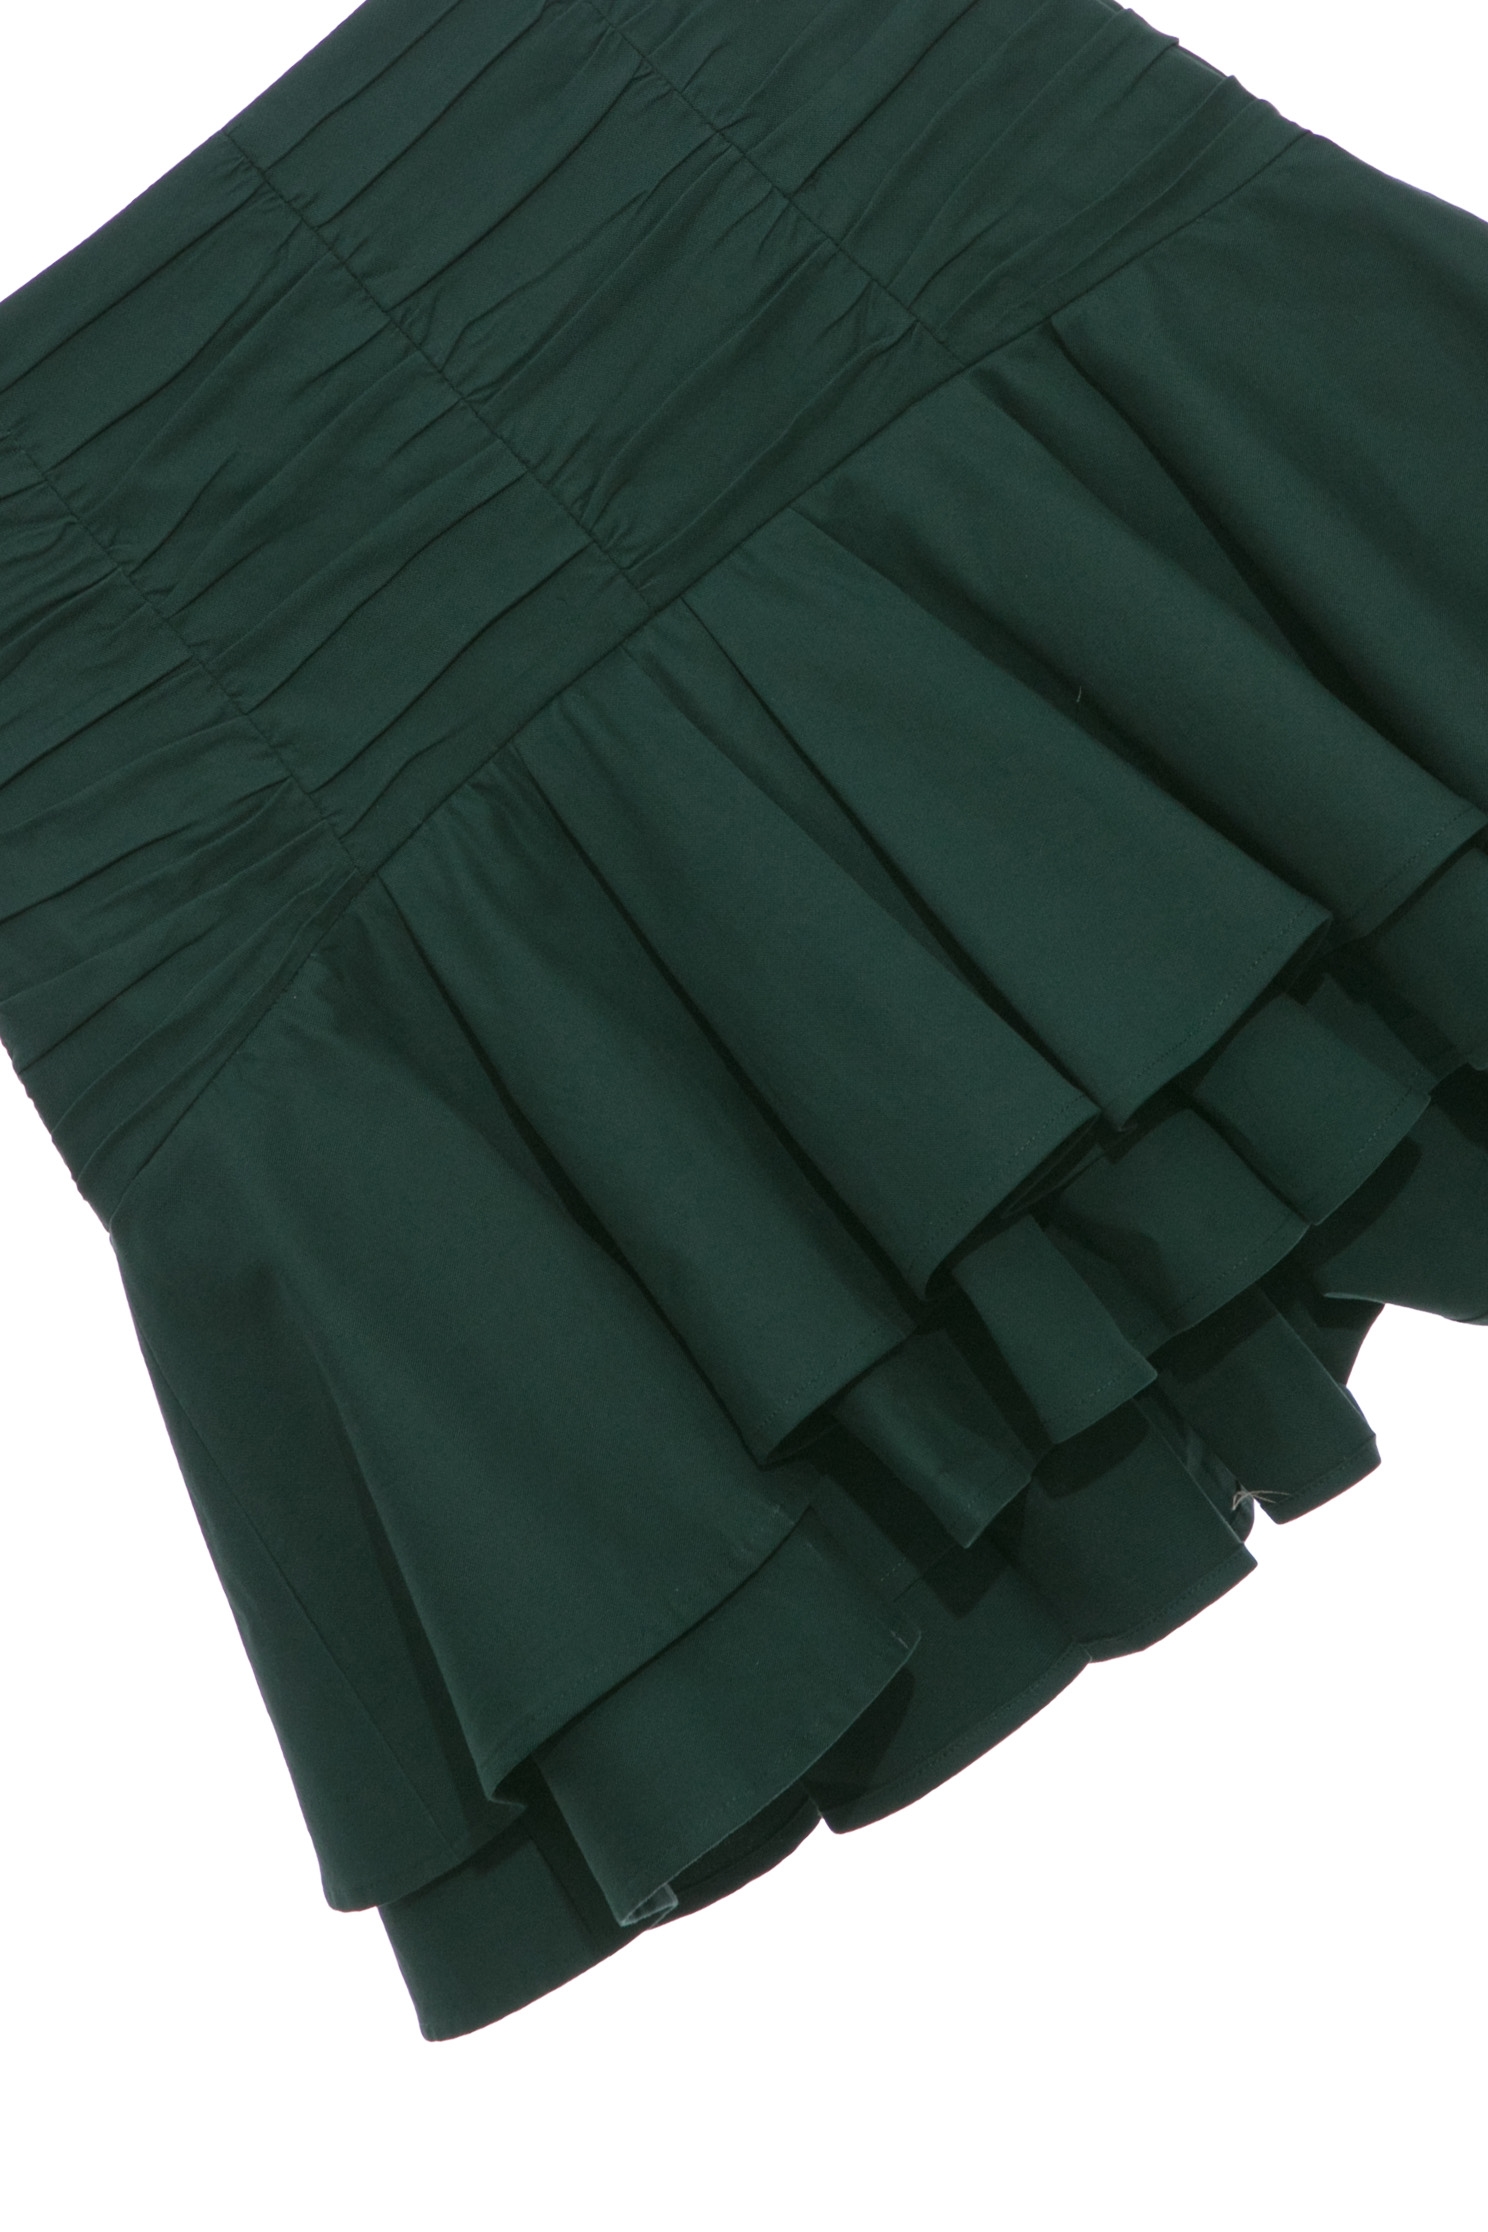 銅綠色俏麗澎澎裙銅綠色俏麗澎澎裙,春夏穿搭,短裙